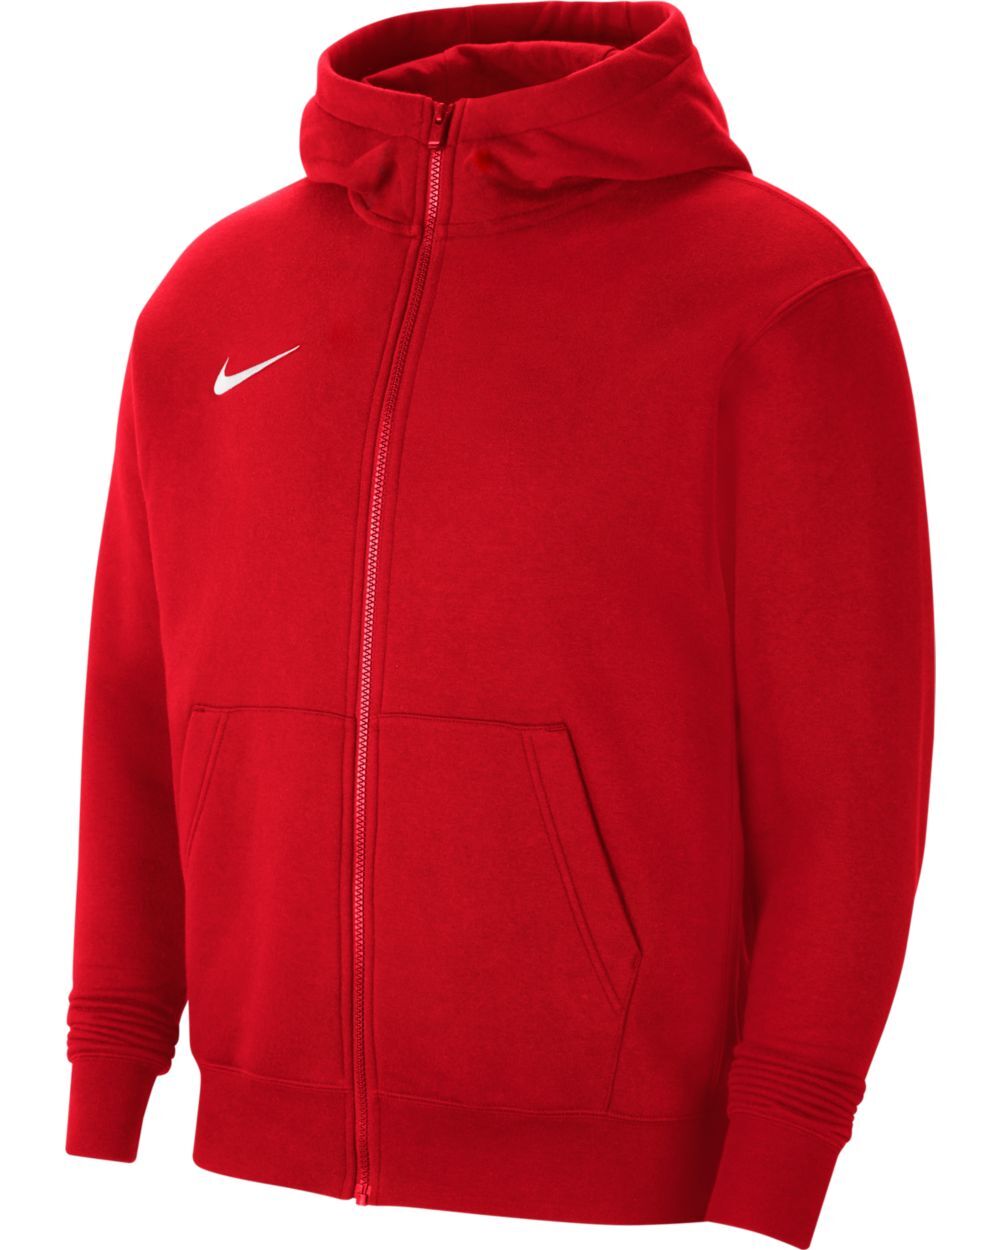 Sudadera con zip y capucha Nike Team Club 20 Rojo para Niño - CW6891-657